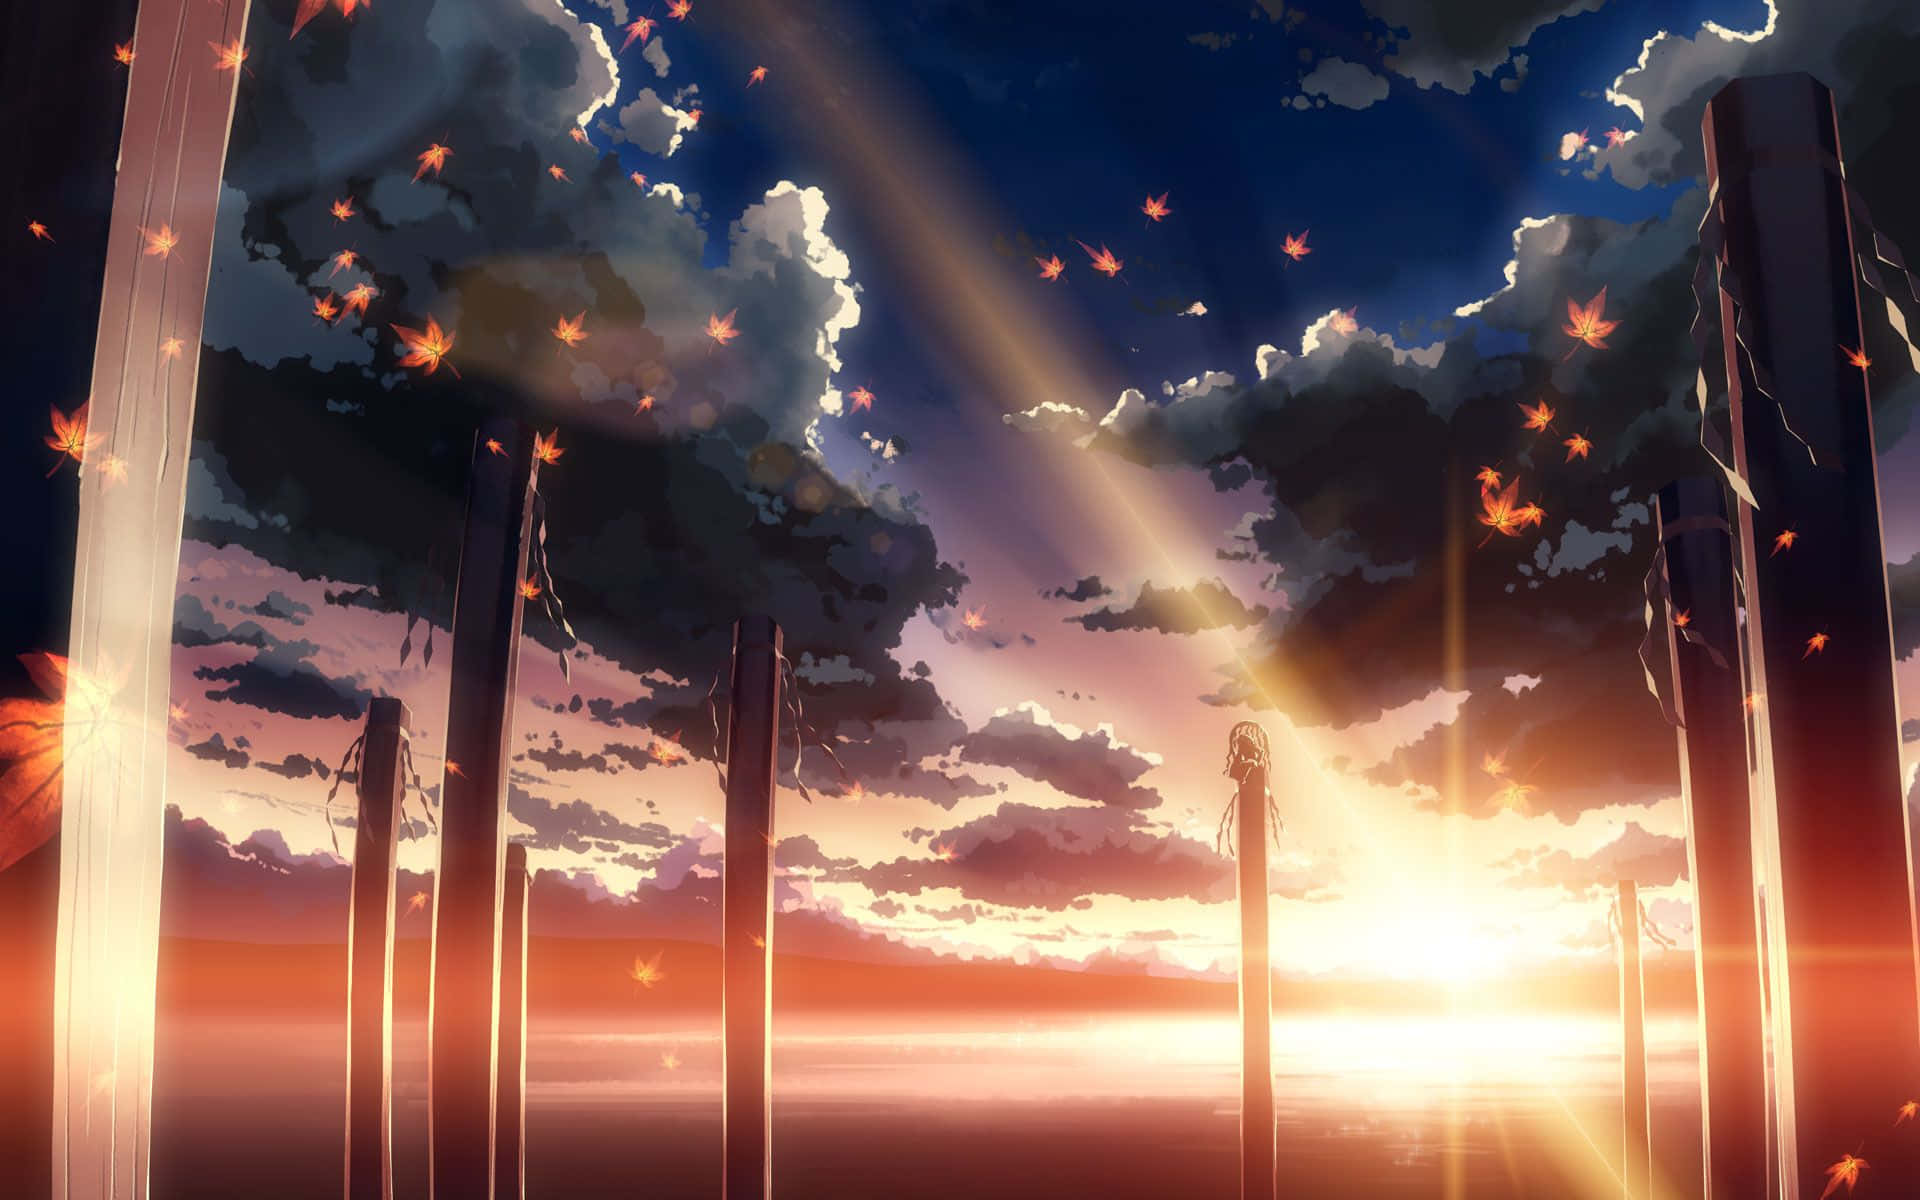 Topersoner Kommer Sammen I Regnen I Den Følelsesmæssige Anime-film 5 Centimeters Per Second.